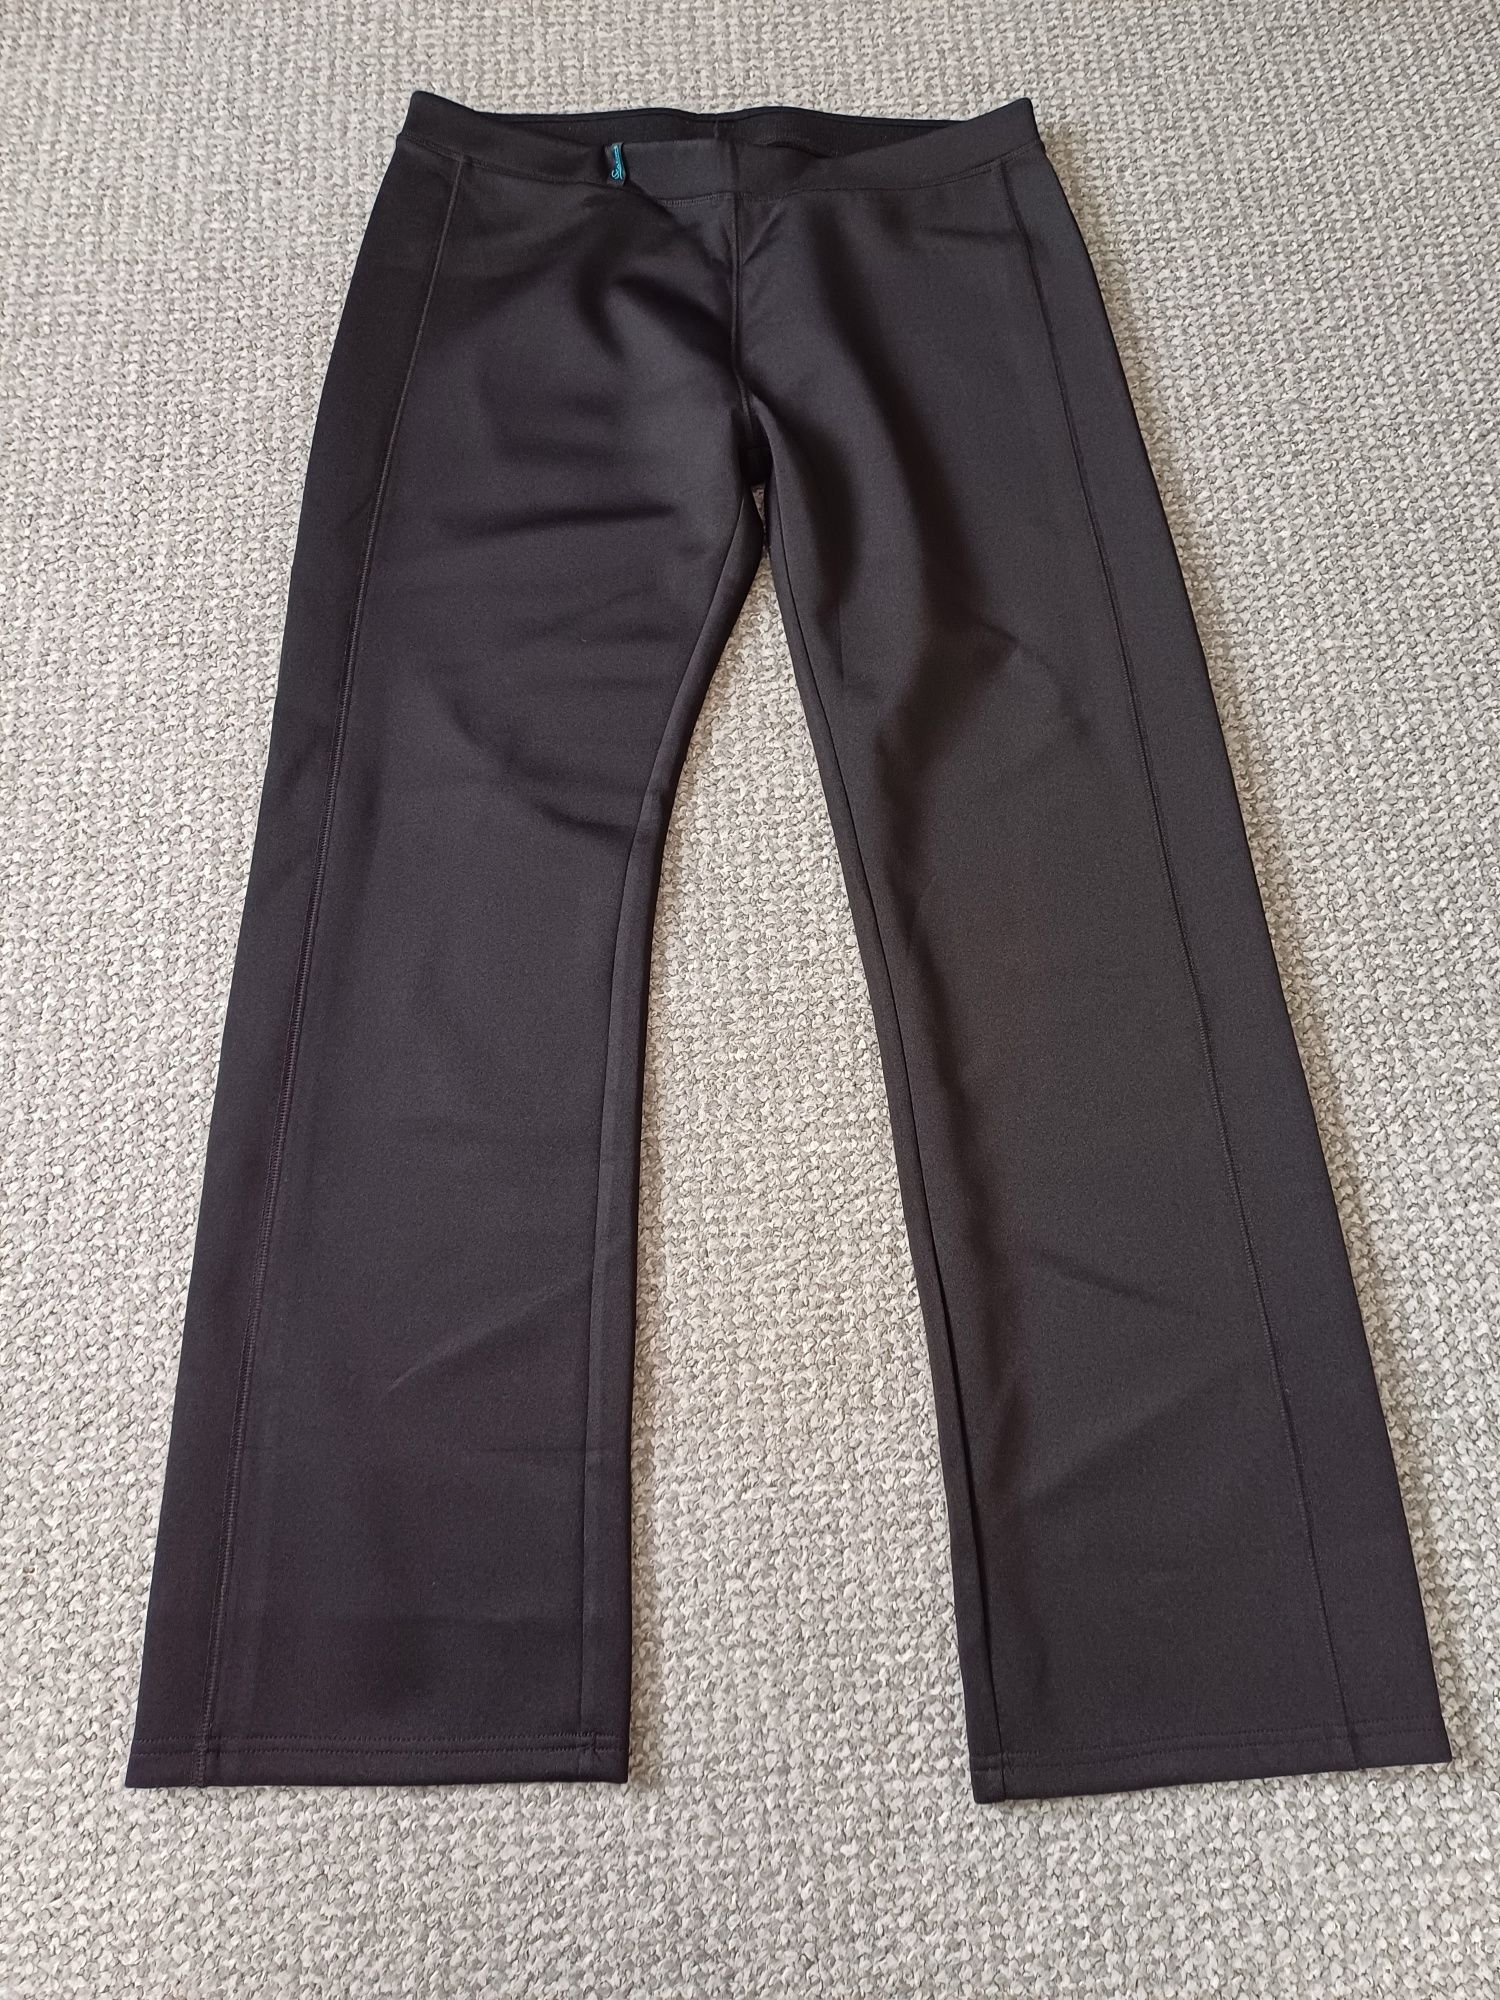 Spodnie spodenki dresowe damskie L/XL